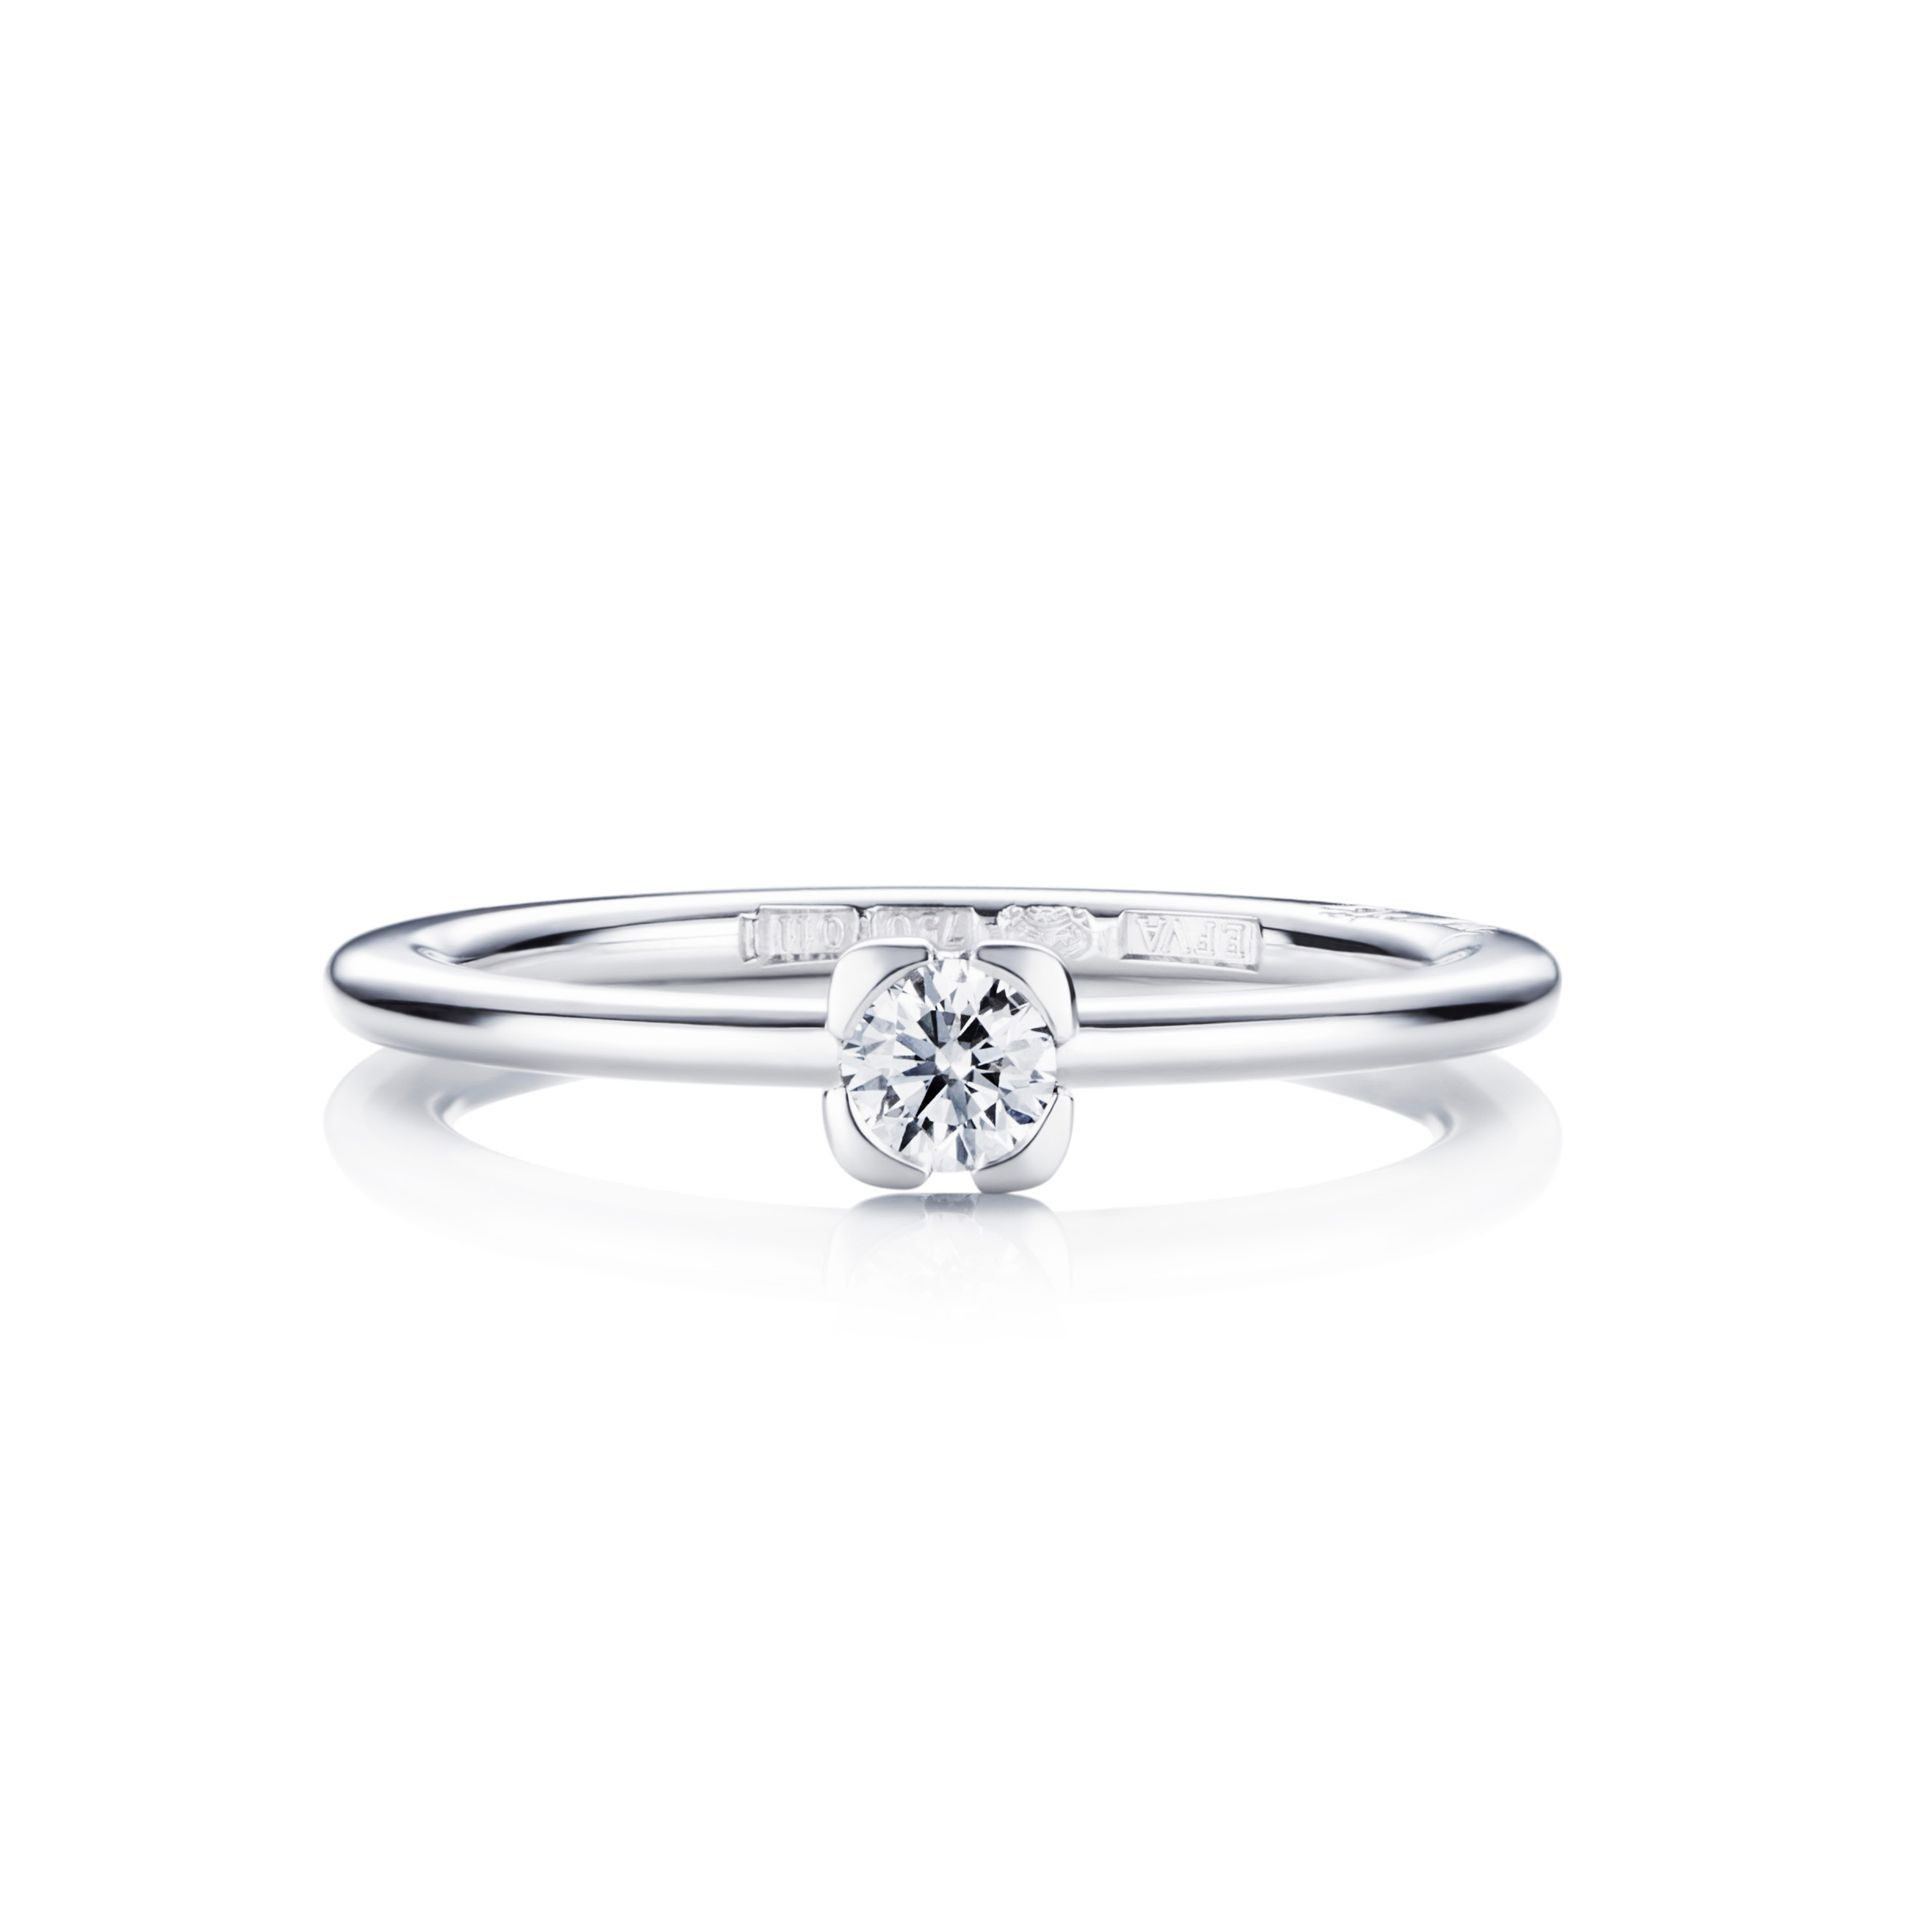 Efva Attling Love Bead Wedding Ring 0.19 ct 21.50 MM - VITGULD